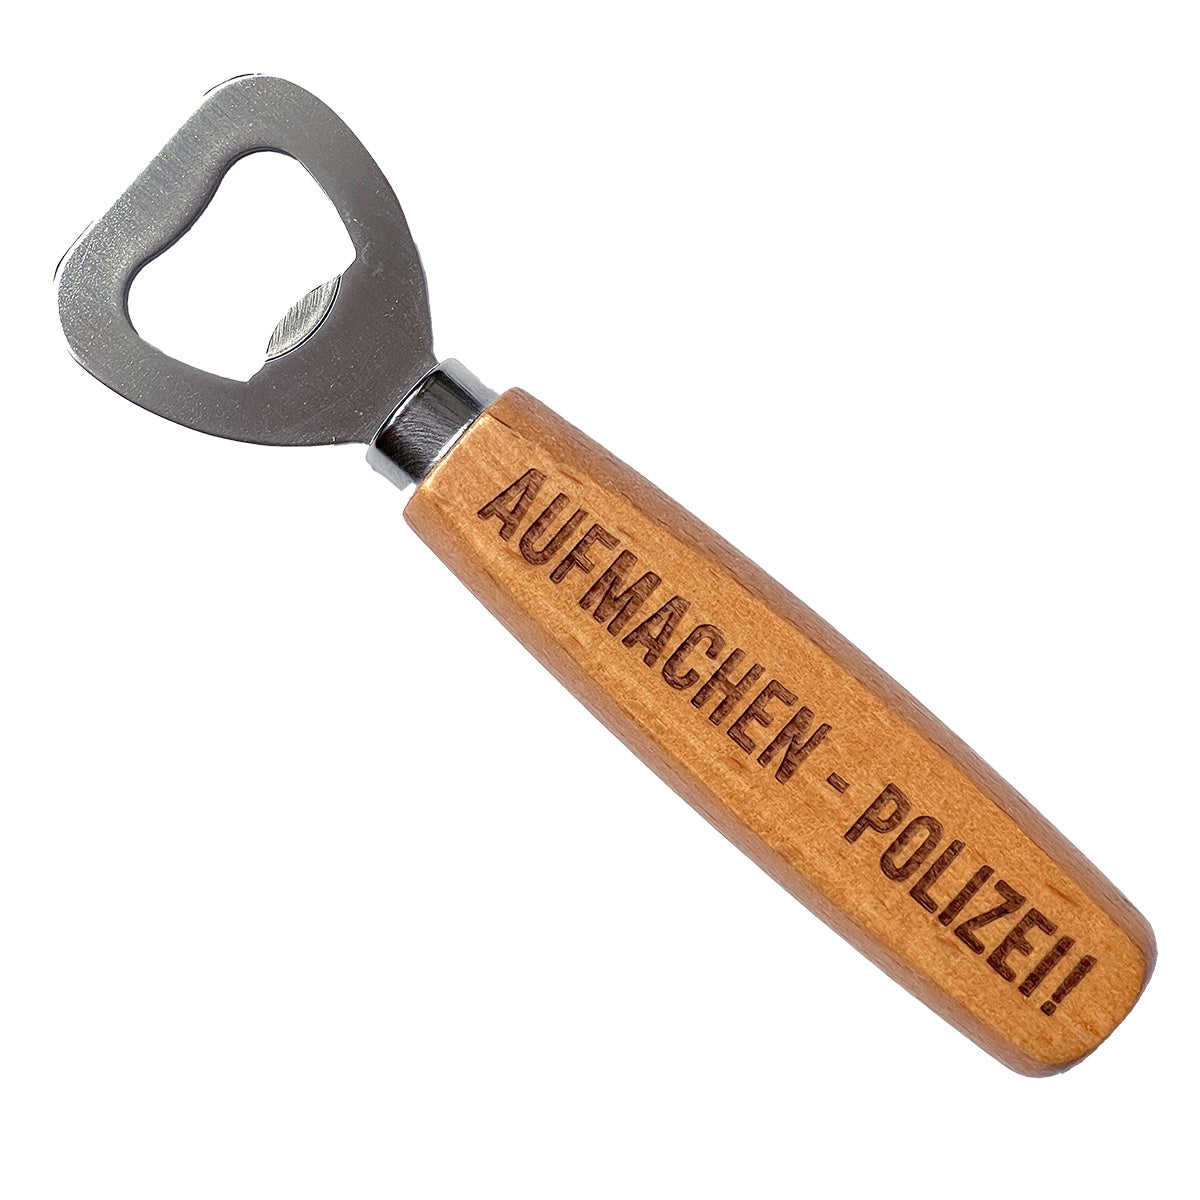 Flaschenöffner mit Lasergravur "Aufmachen, Polizei!" Holz / Metall